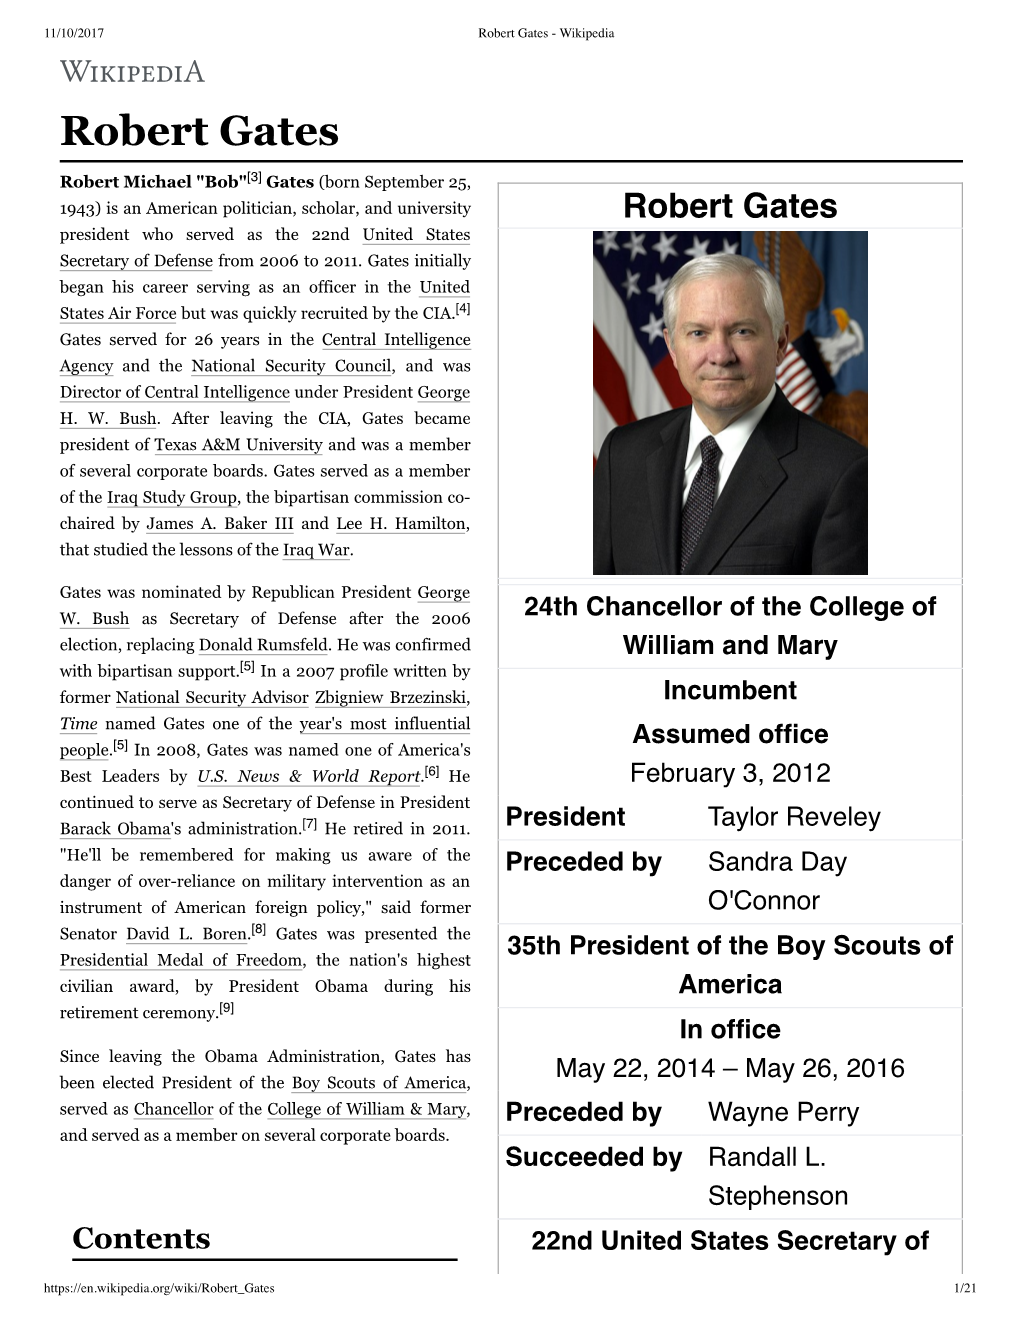 Robert Gates - Wikipedia